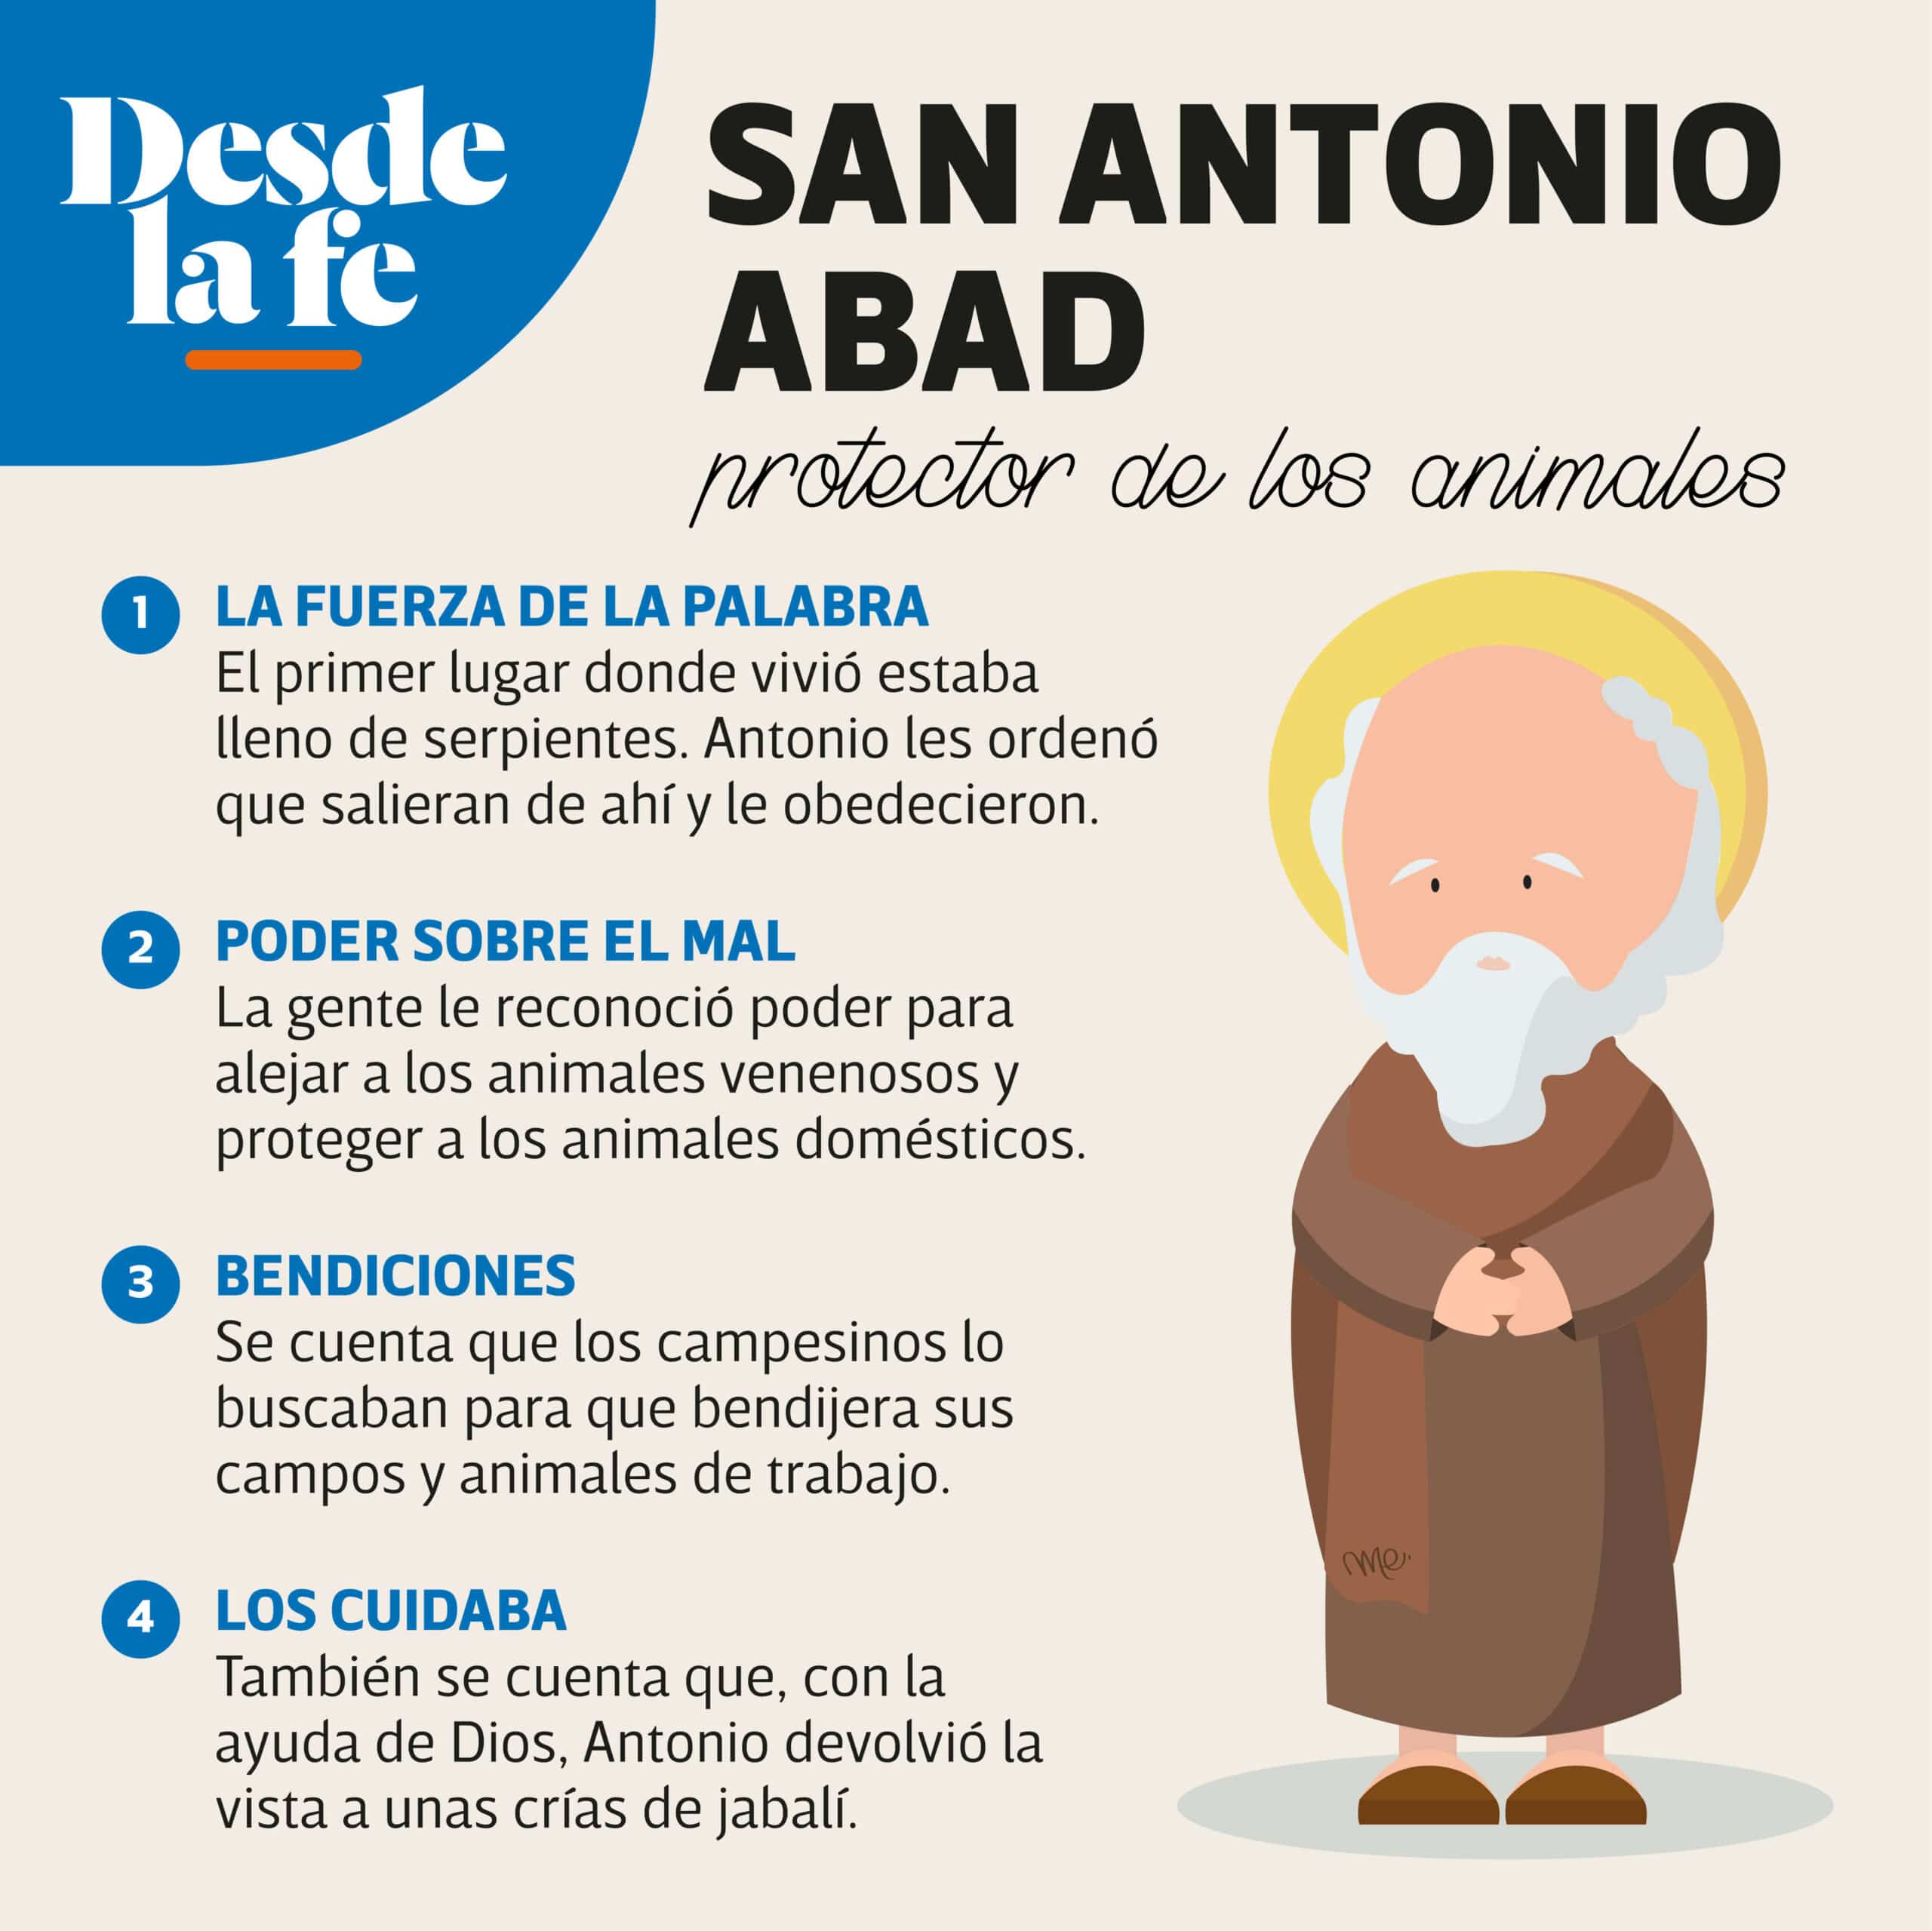 San Antonio Abad es considerado protector de los animales.